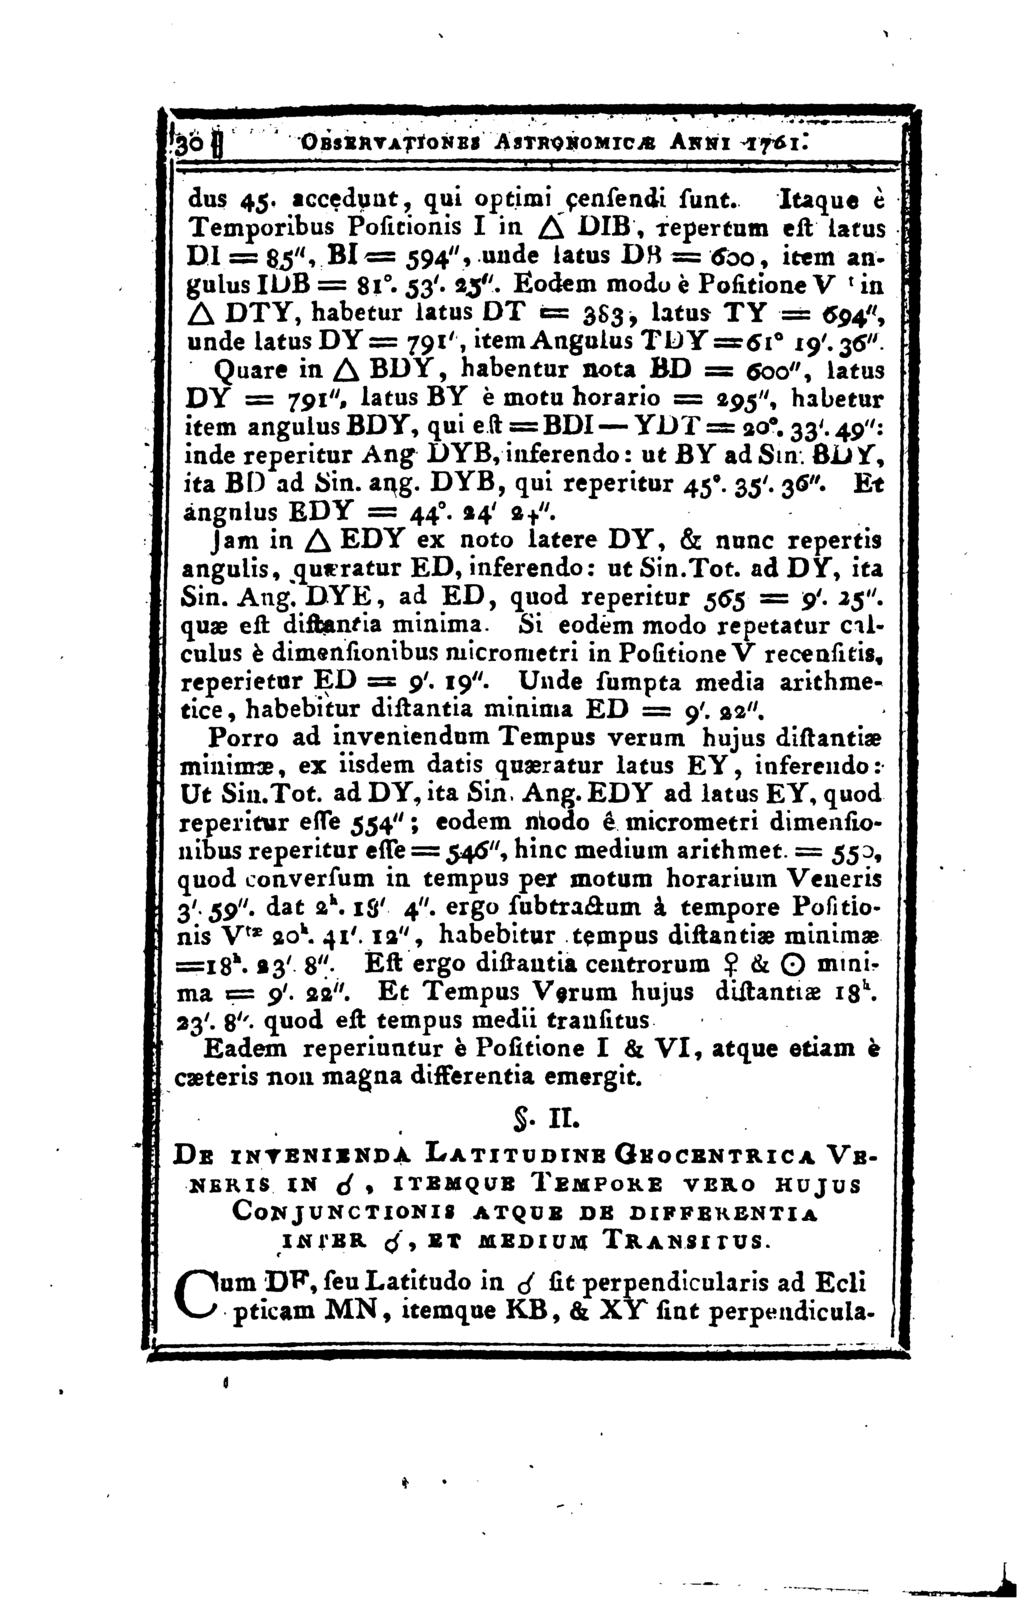 1 3b (J OBsinvATroNES Astronomics Akni 1761." dus 45. accedunt, qui optimi çensendi sunt.